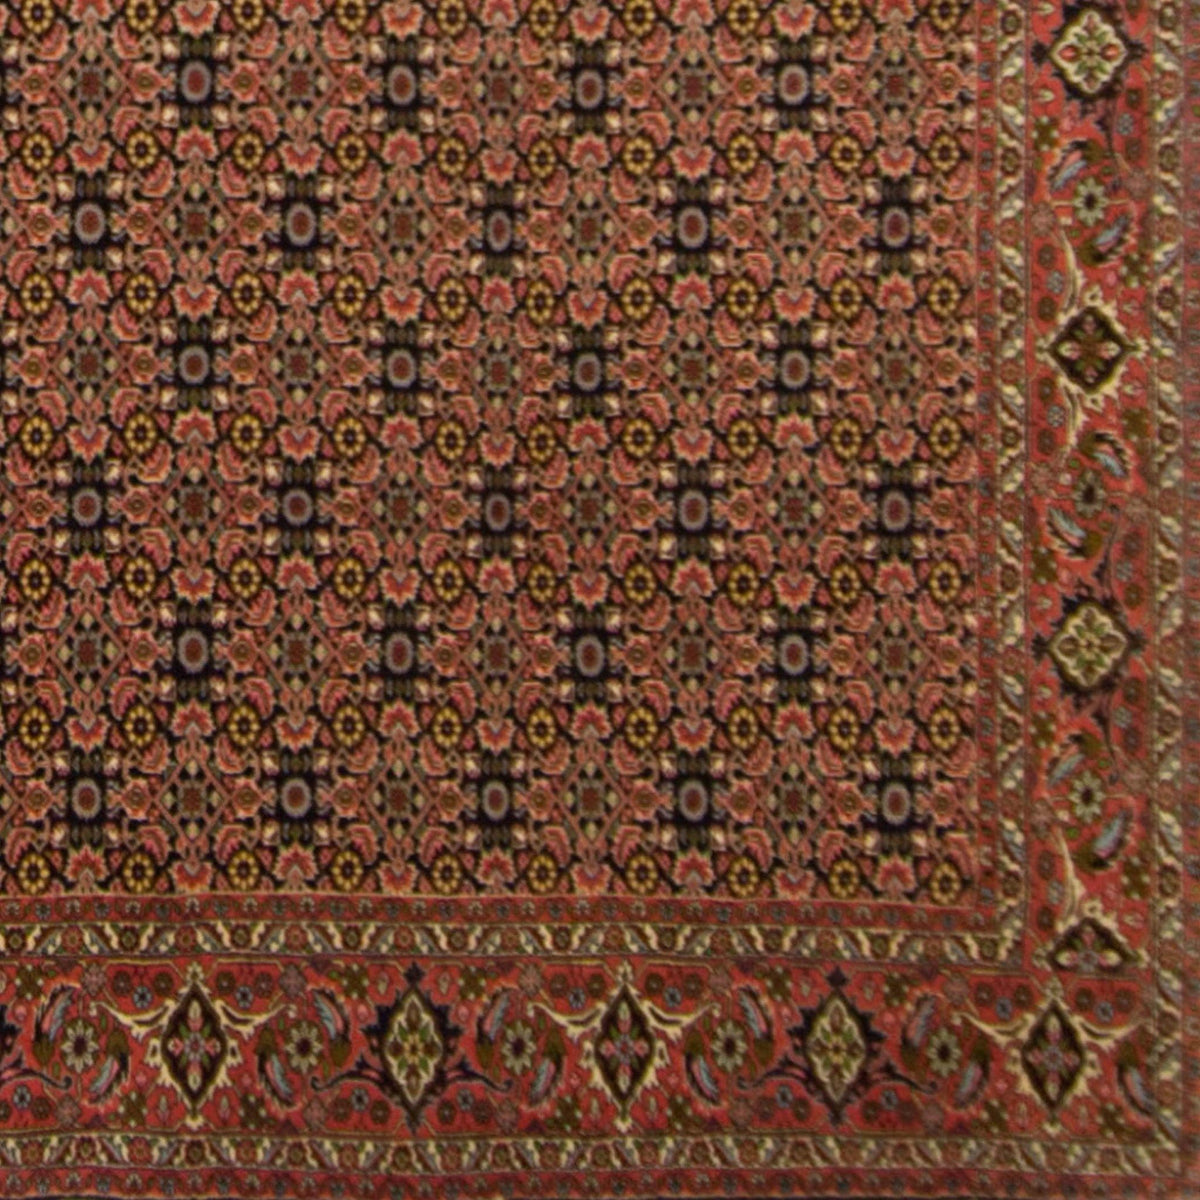 Super Fine Hand-knotted Persian Wool Bijar Rug 250cm x 339cm